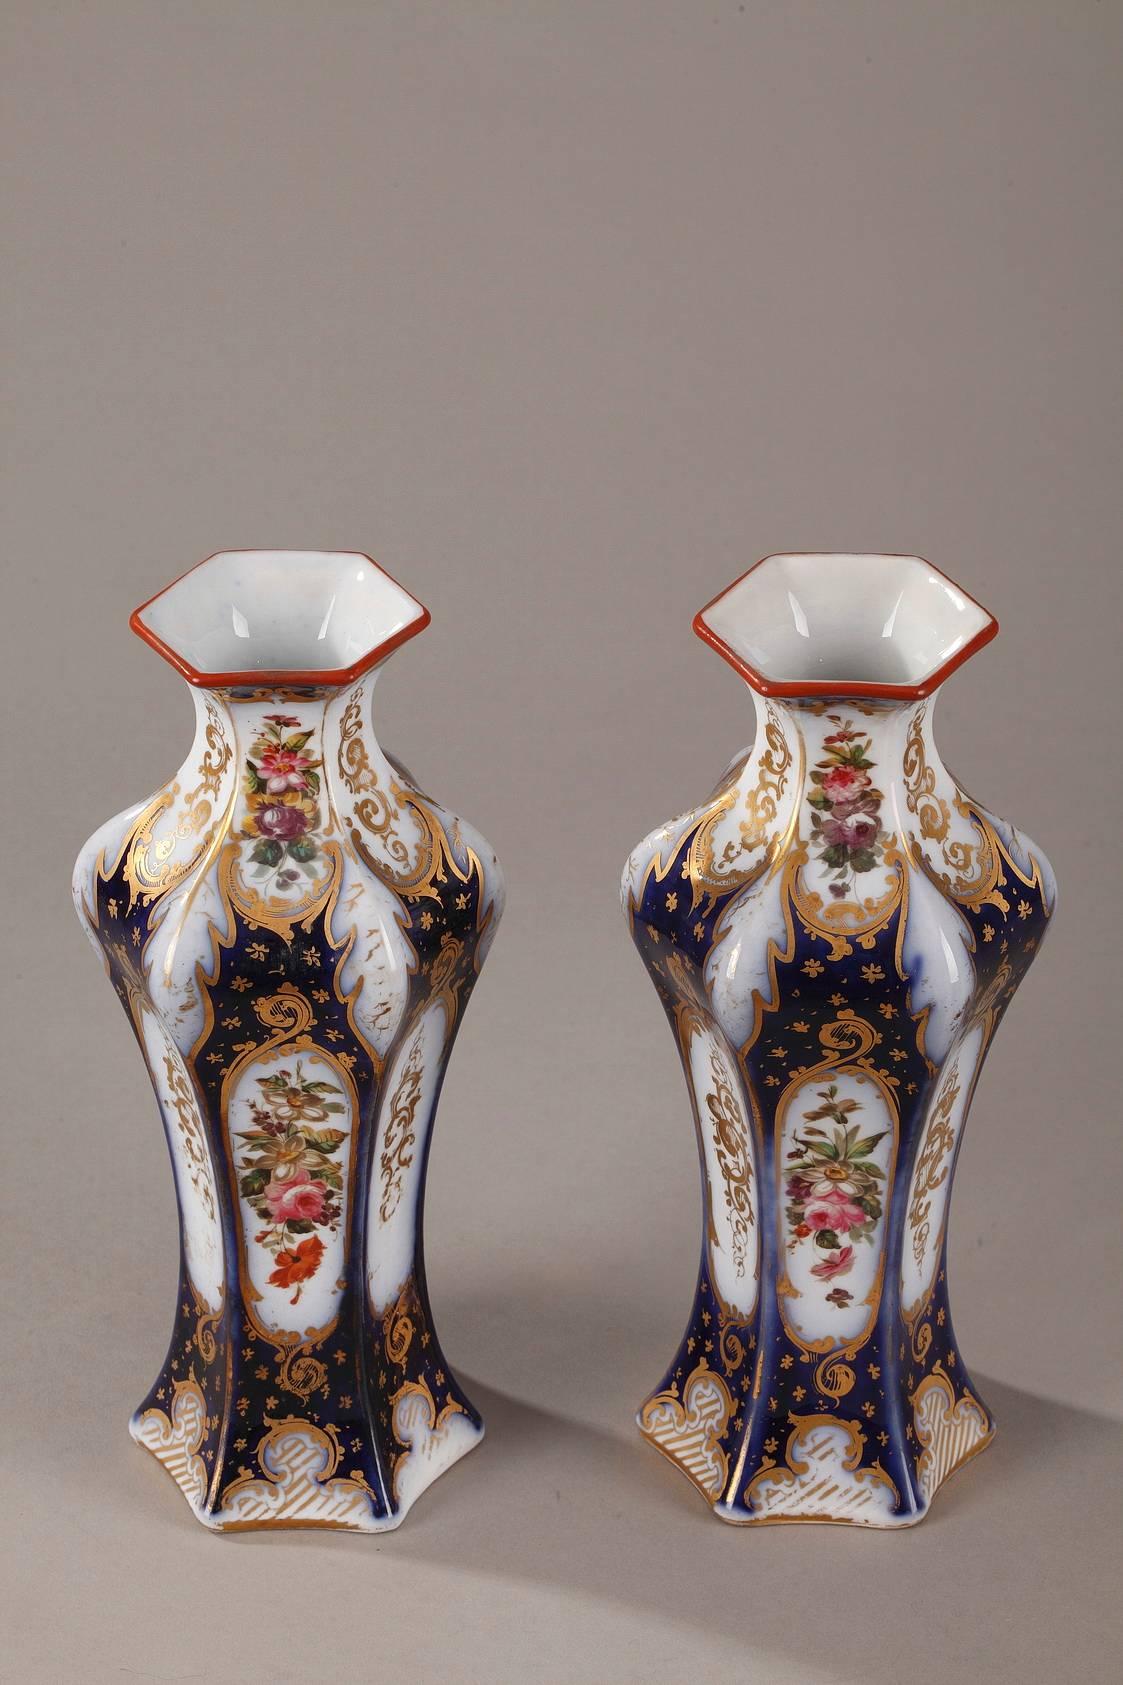 Paire de vases hexagonaux en porcelaine décorés de fleurs multicolores. Le fond bleu nuit est souligné de motifs floraux et de feuillages dorés. Période Napoléon III.

vers 1860
Dim : L : 3.9 in - P : 3.9 in - H : 9.4 in
Dim : L : 10cm, P :